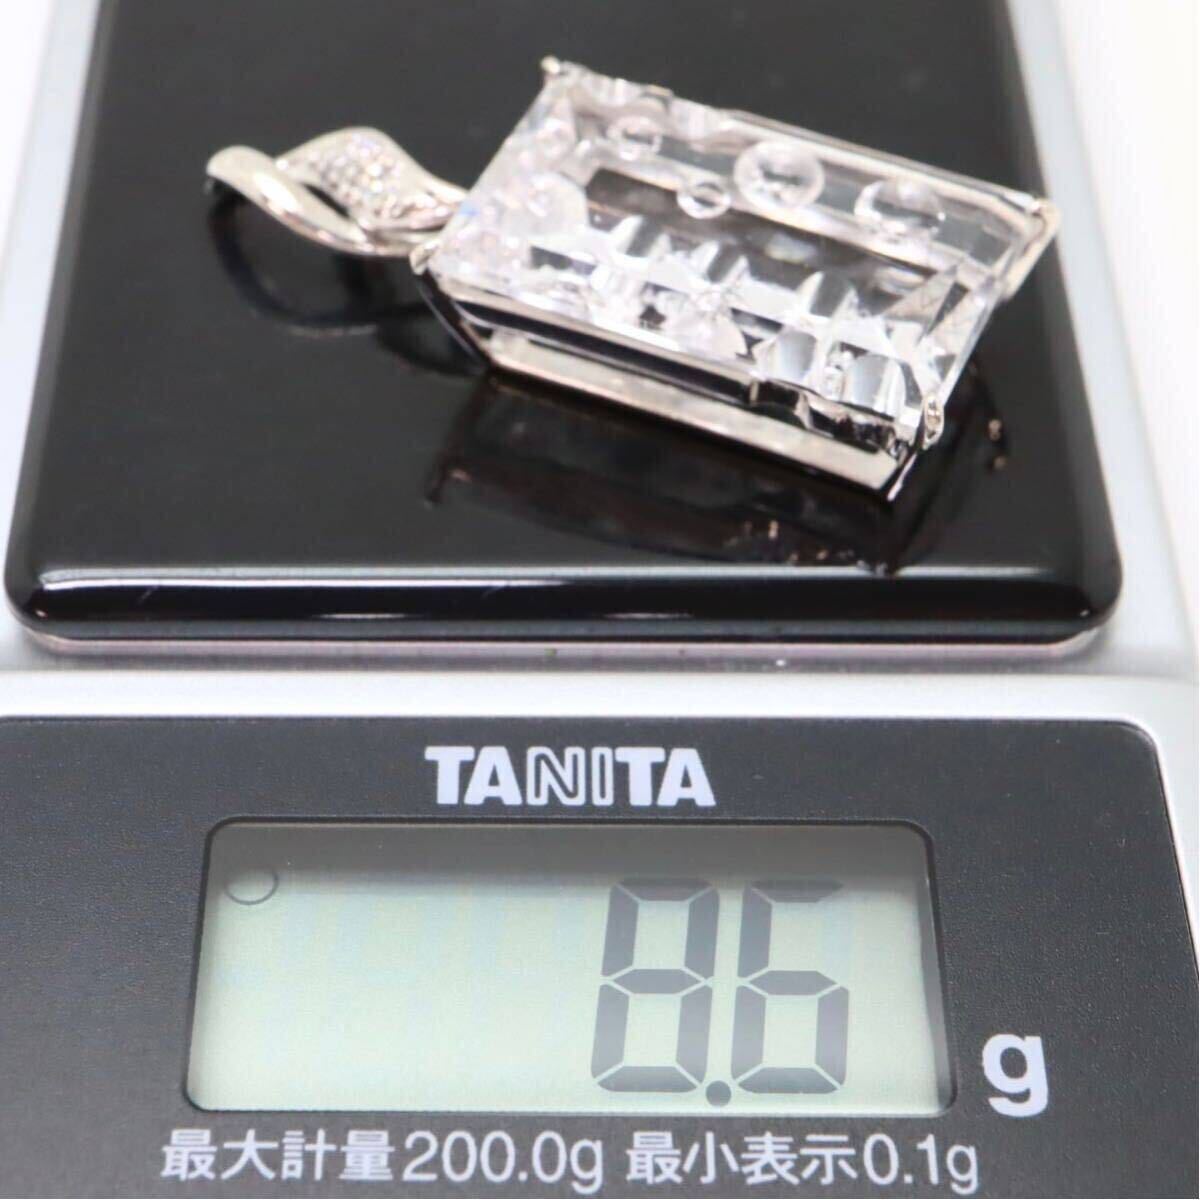  хорошая вещь!!so-ting имеется!!*K18WG натуральный sagenitik кварц / натуральный бриллиант подвеска с цепью *m 8.6g quartz diamond jewelry ED8/ED8